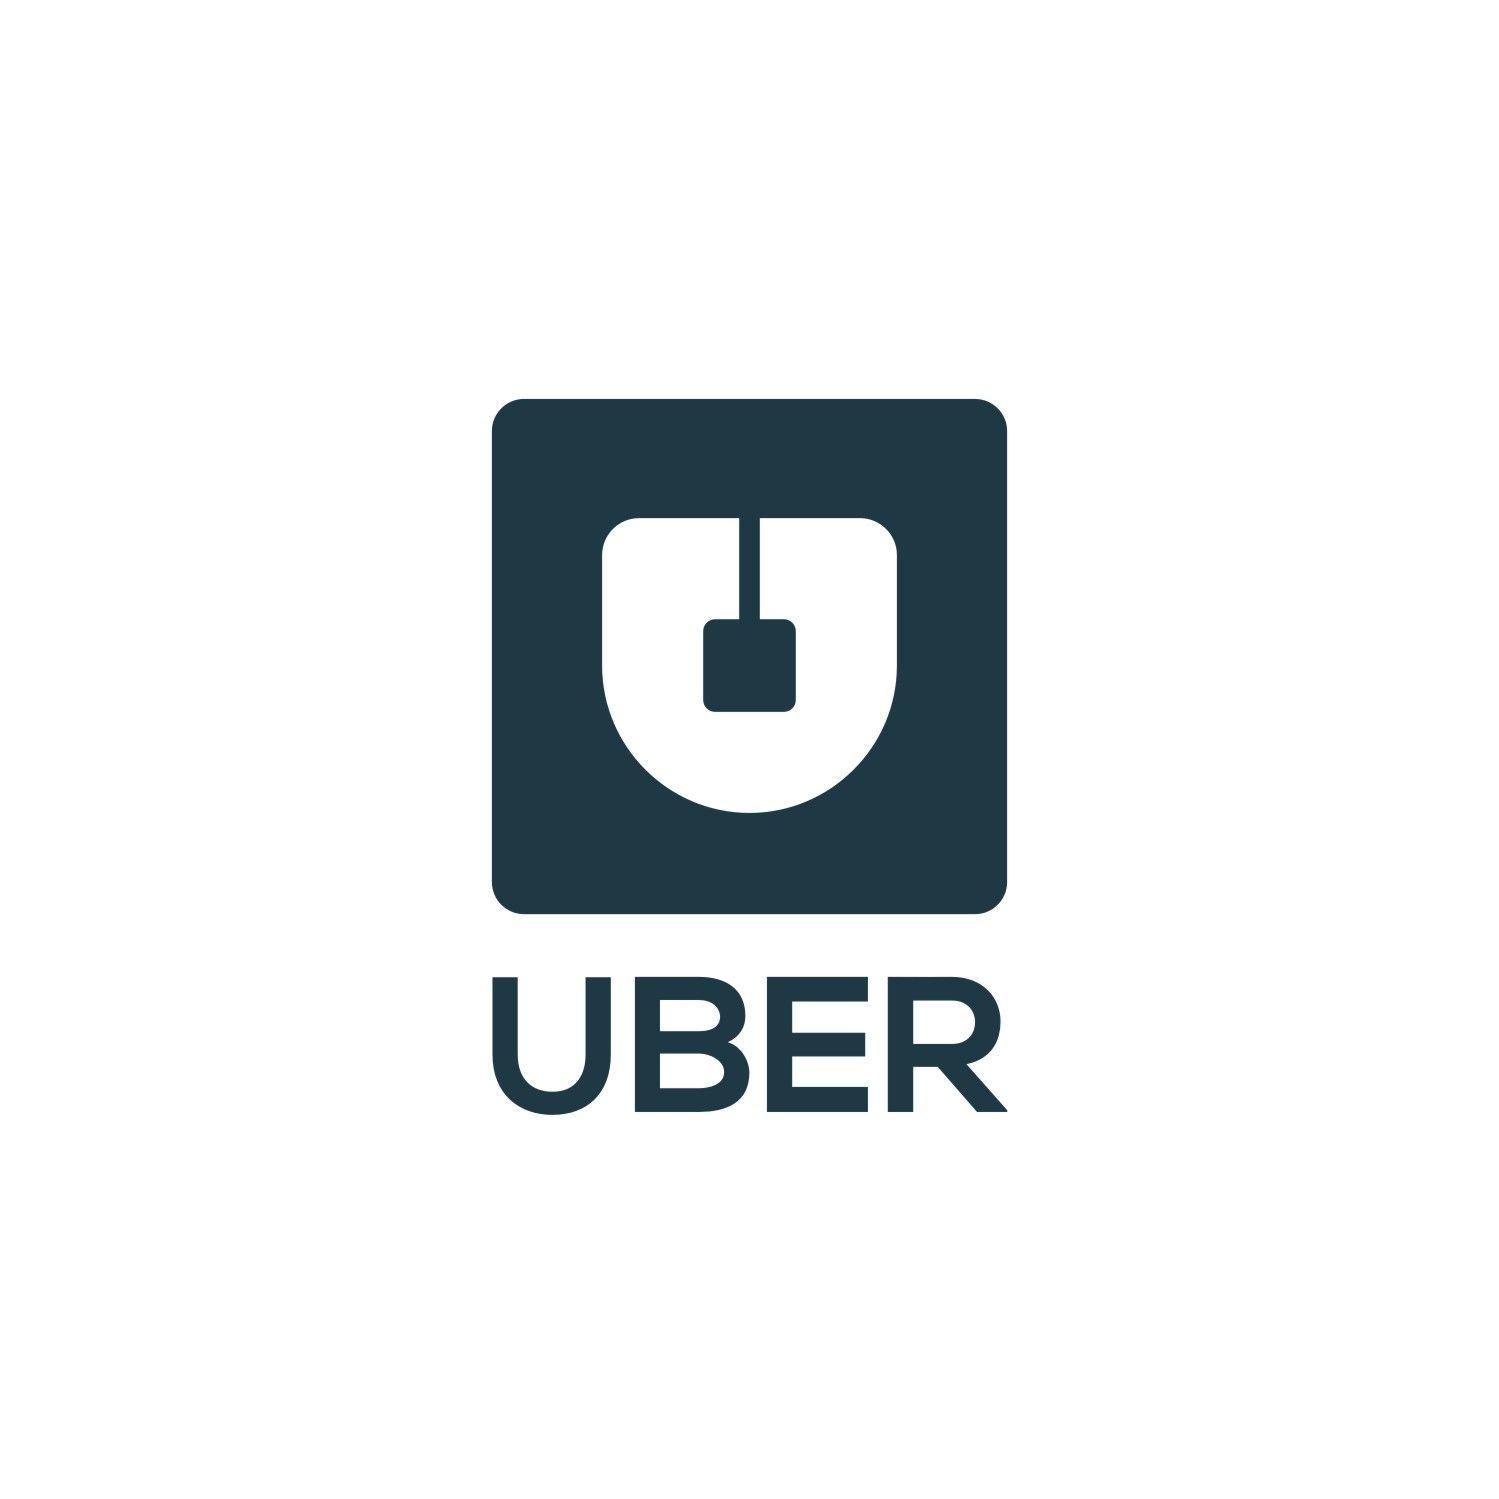 Uber Company Logo - Elegant, Playful Logo Design for Uber by Sushma | Design #9677769